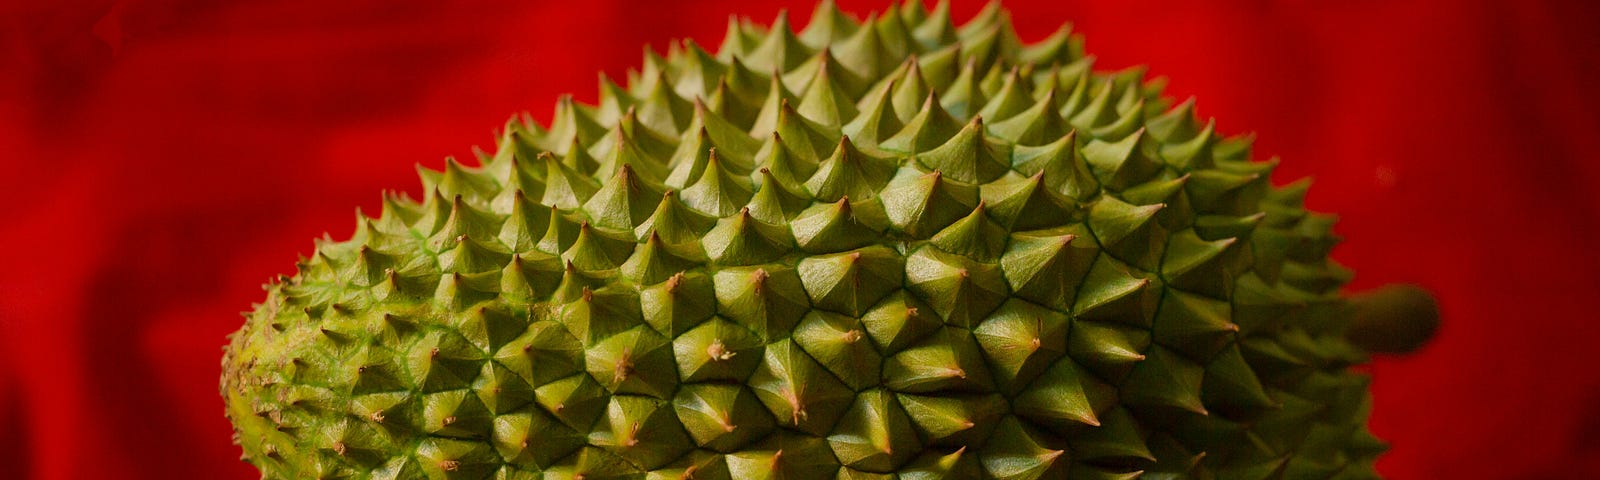 A spiky durian fruit on a table